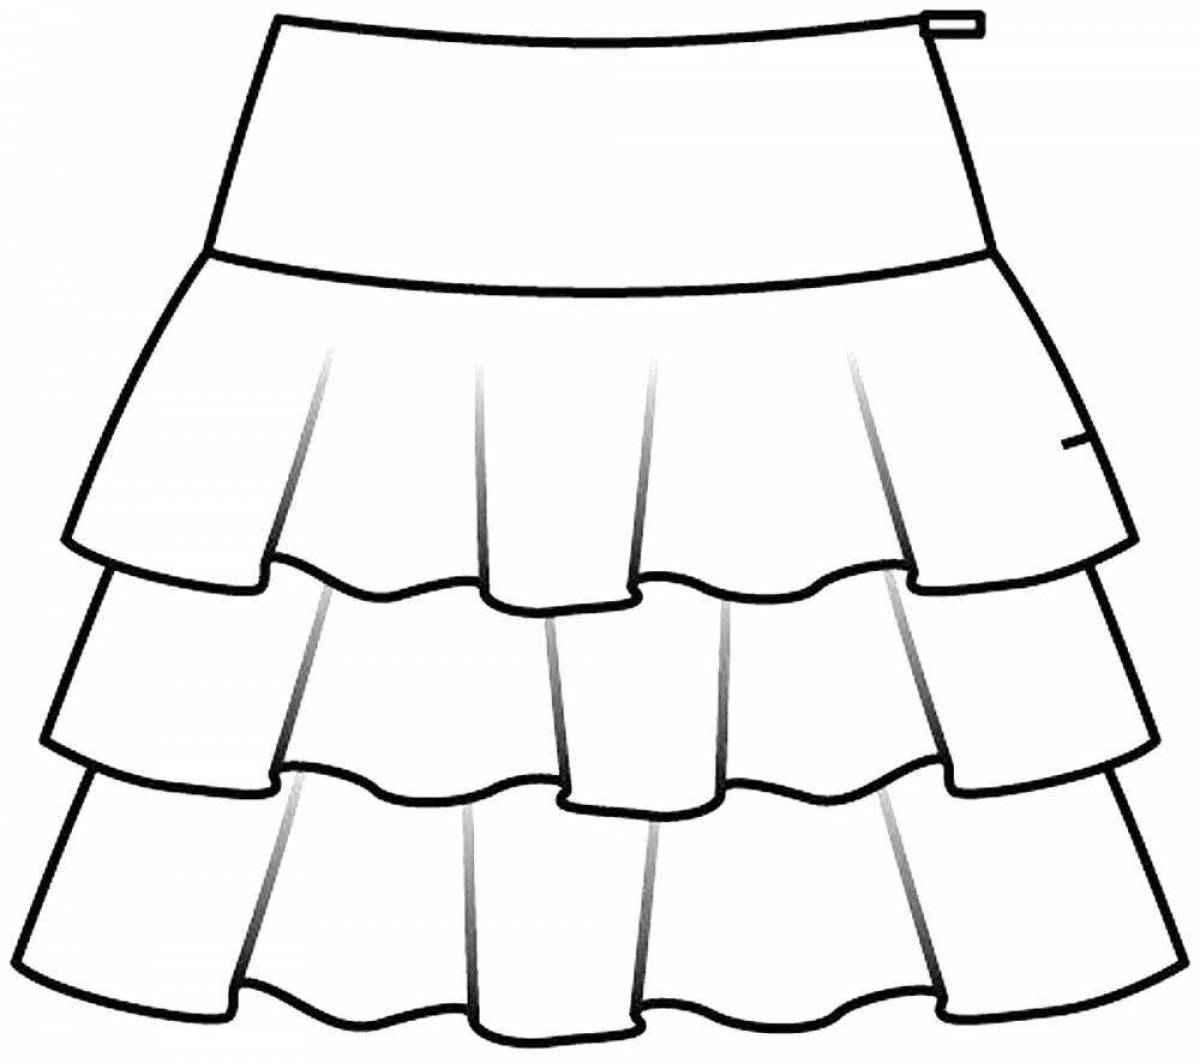 Увлекательная раскраска юбки для детей